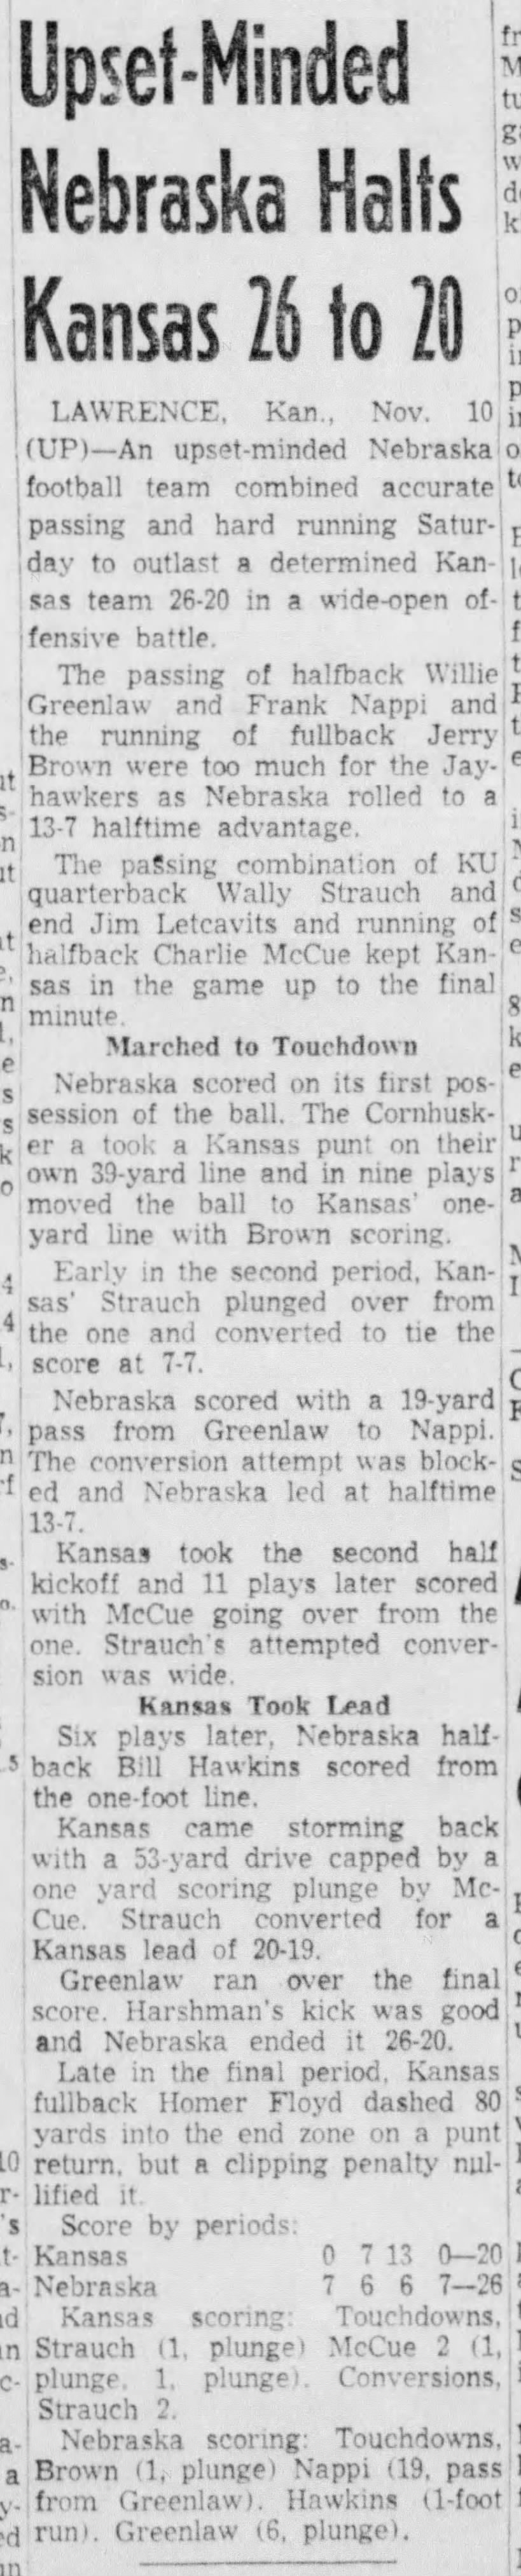 1956 Nebraska-Kansas football UP